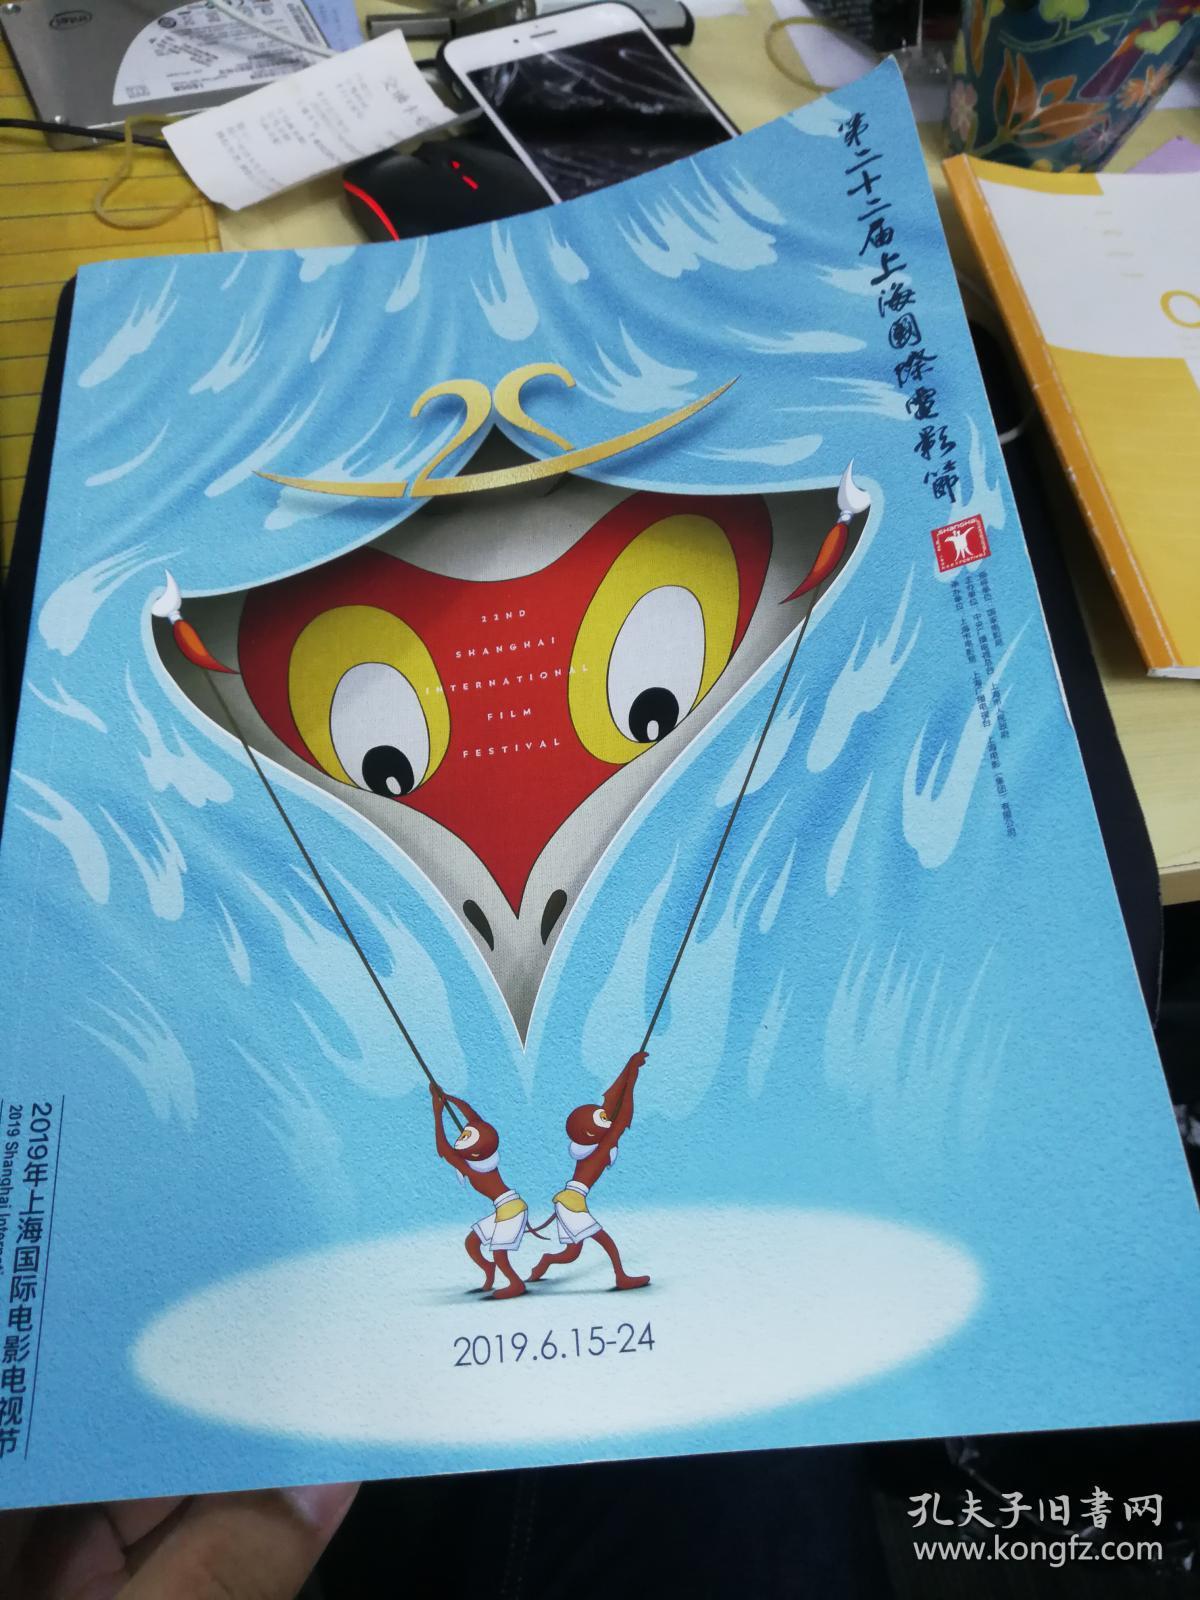 第二十二届上海国际电影节官方入围电影手册 非常大和厚的一本，详细介绍了所有入围的影片、人员、评委以及开幕式影片等等其他资料